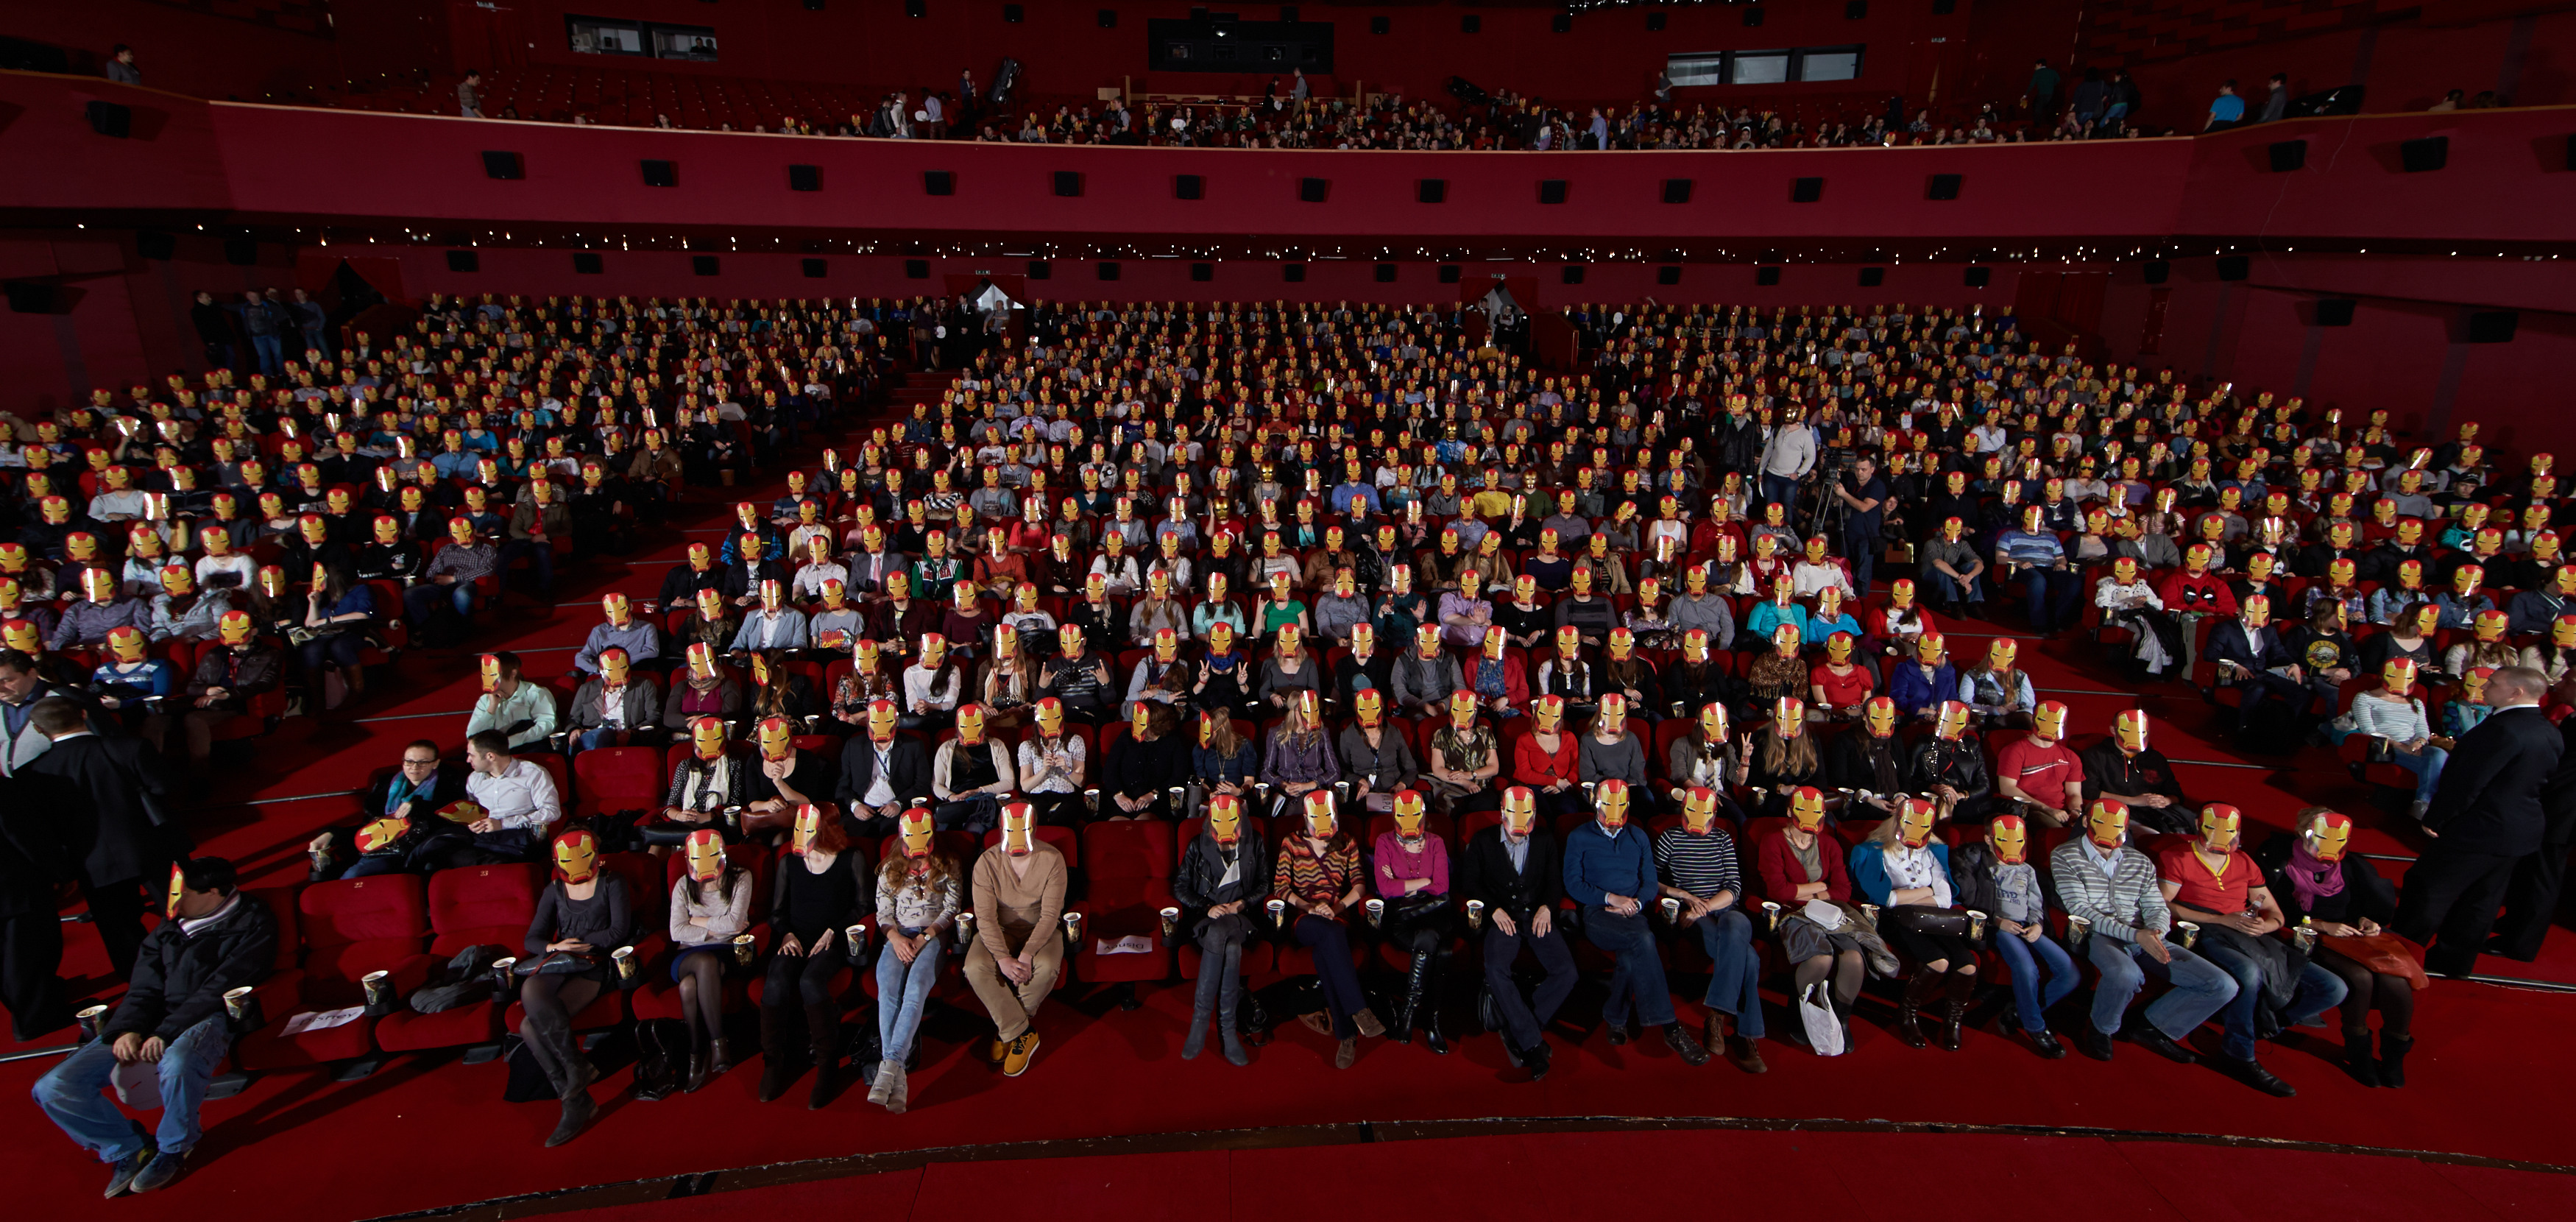 Количество зрителей в театре. Зрительный зал с людьми. Зал со сценой. Полный зал людей. Сцена и полный зал.